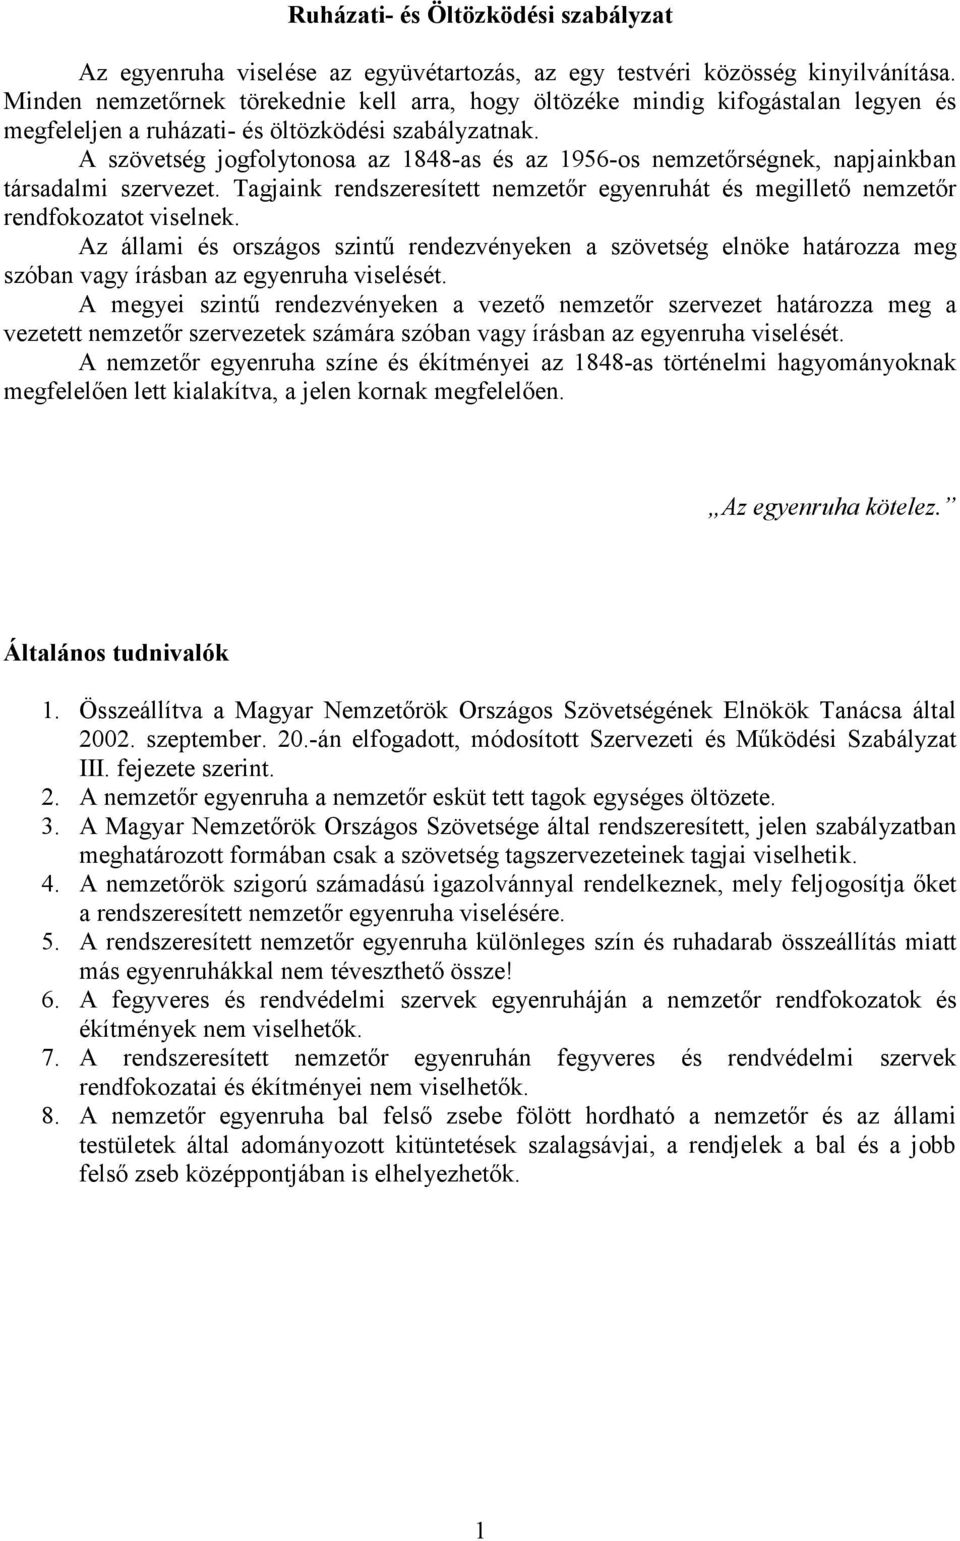 Ruházati- és Öltözködési szabályzat - PDF Ingyenes letöltés